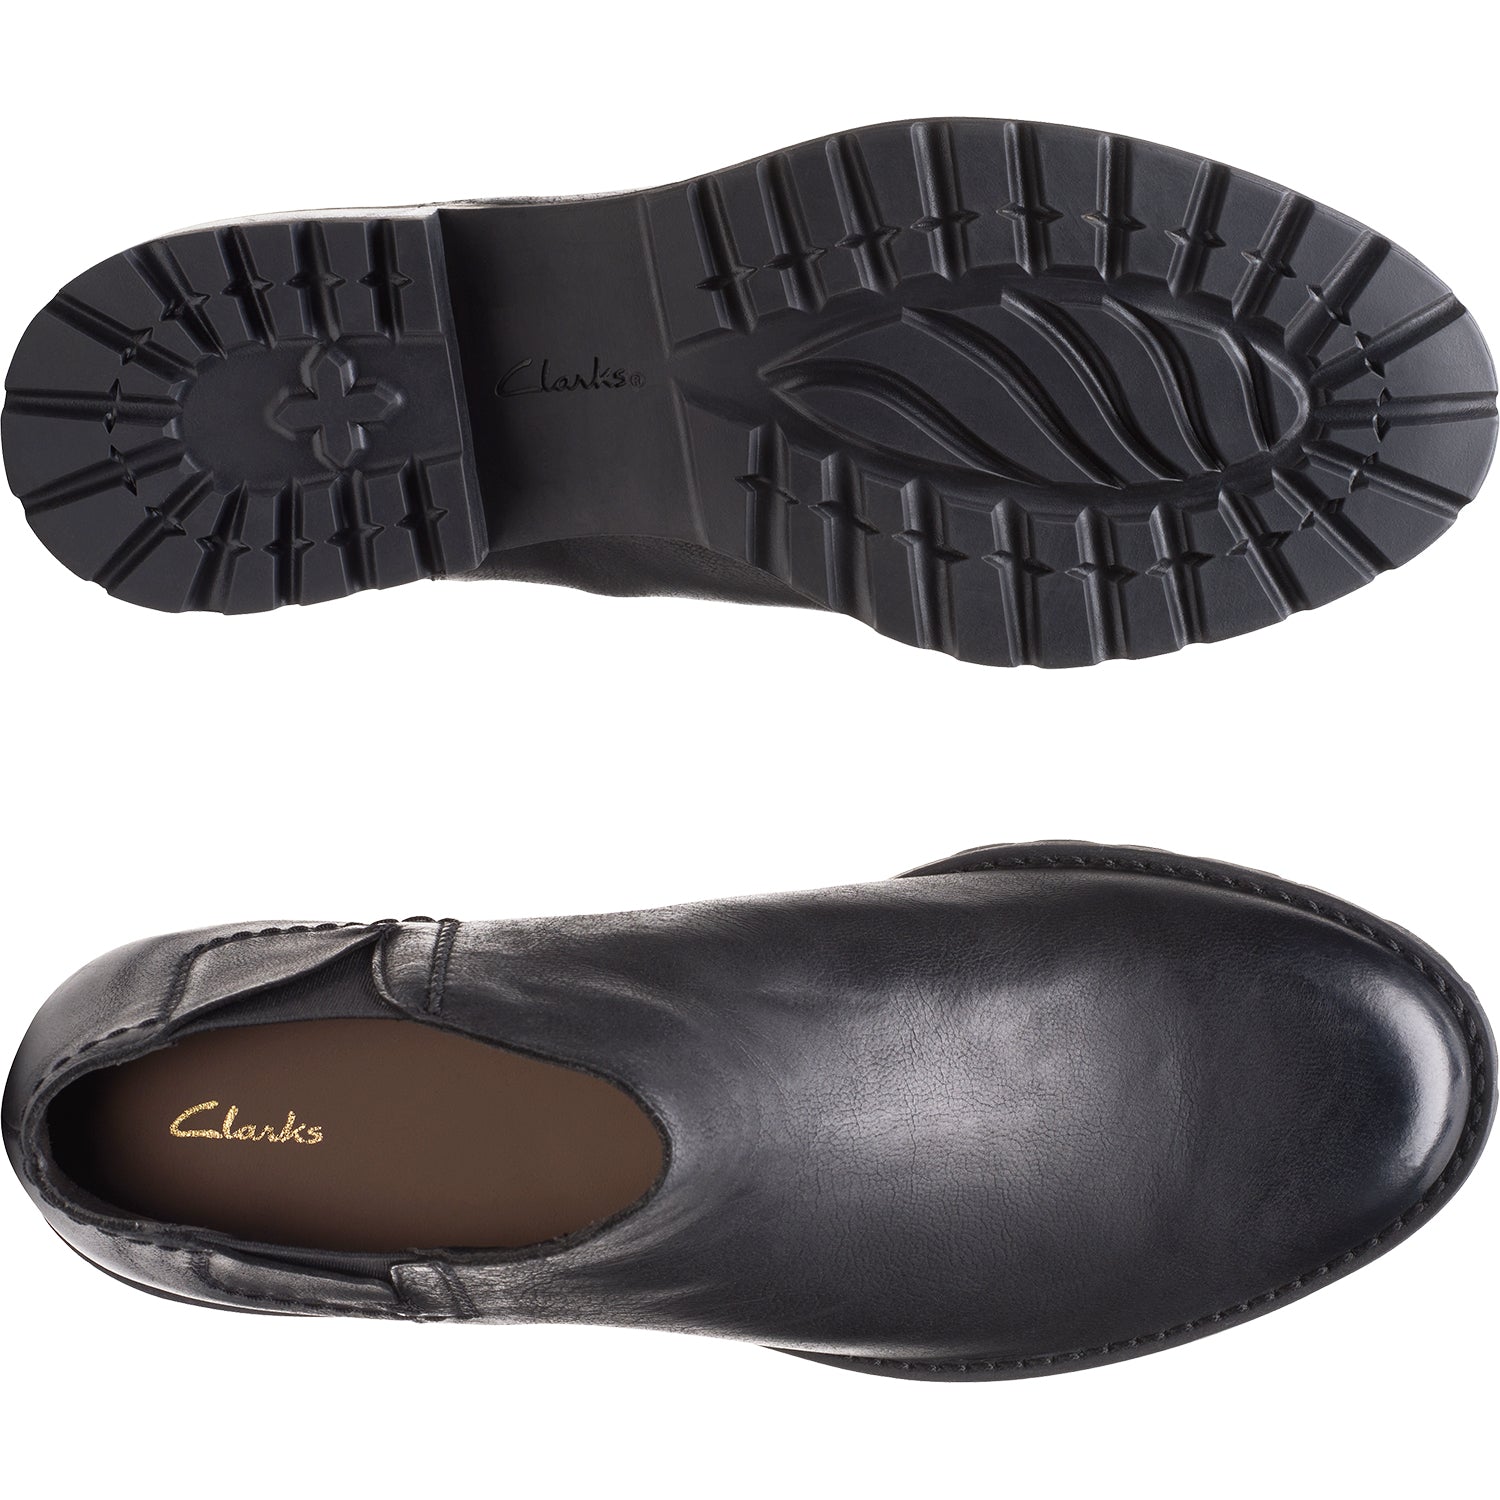 Clarks Clarkwell Demi | Women's Ankle Boots | Footwear etc.